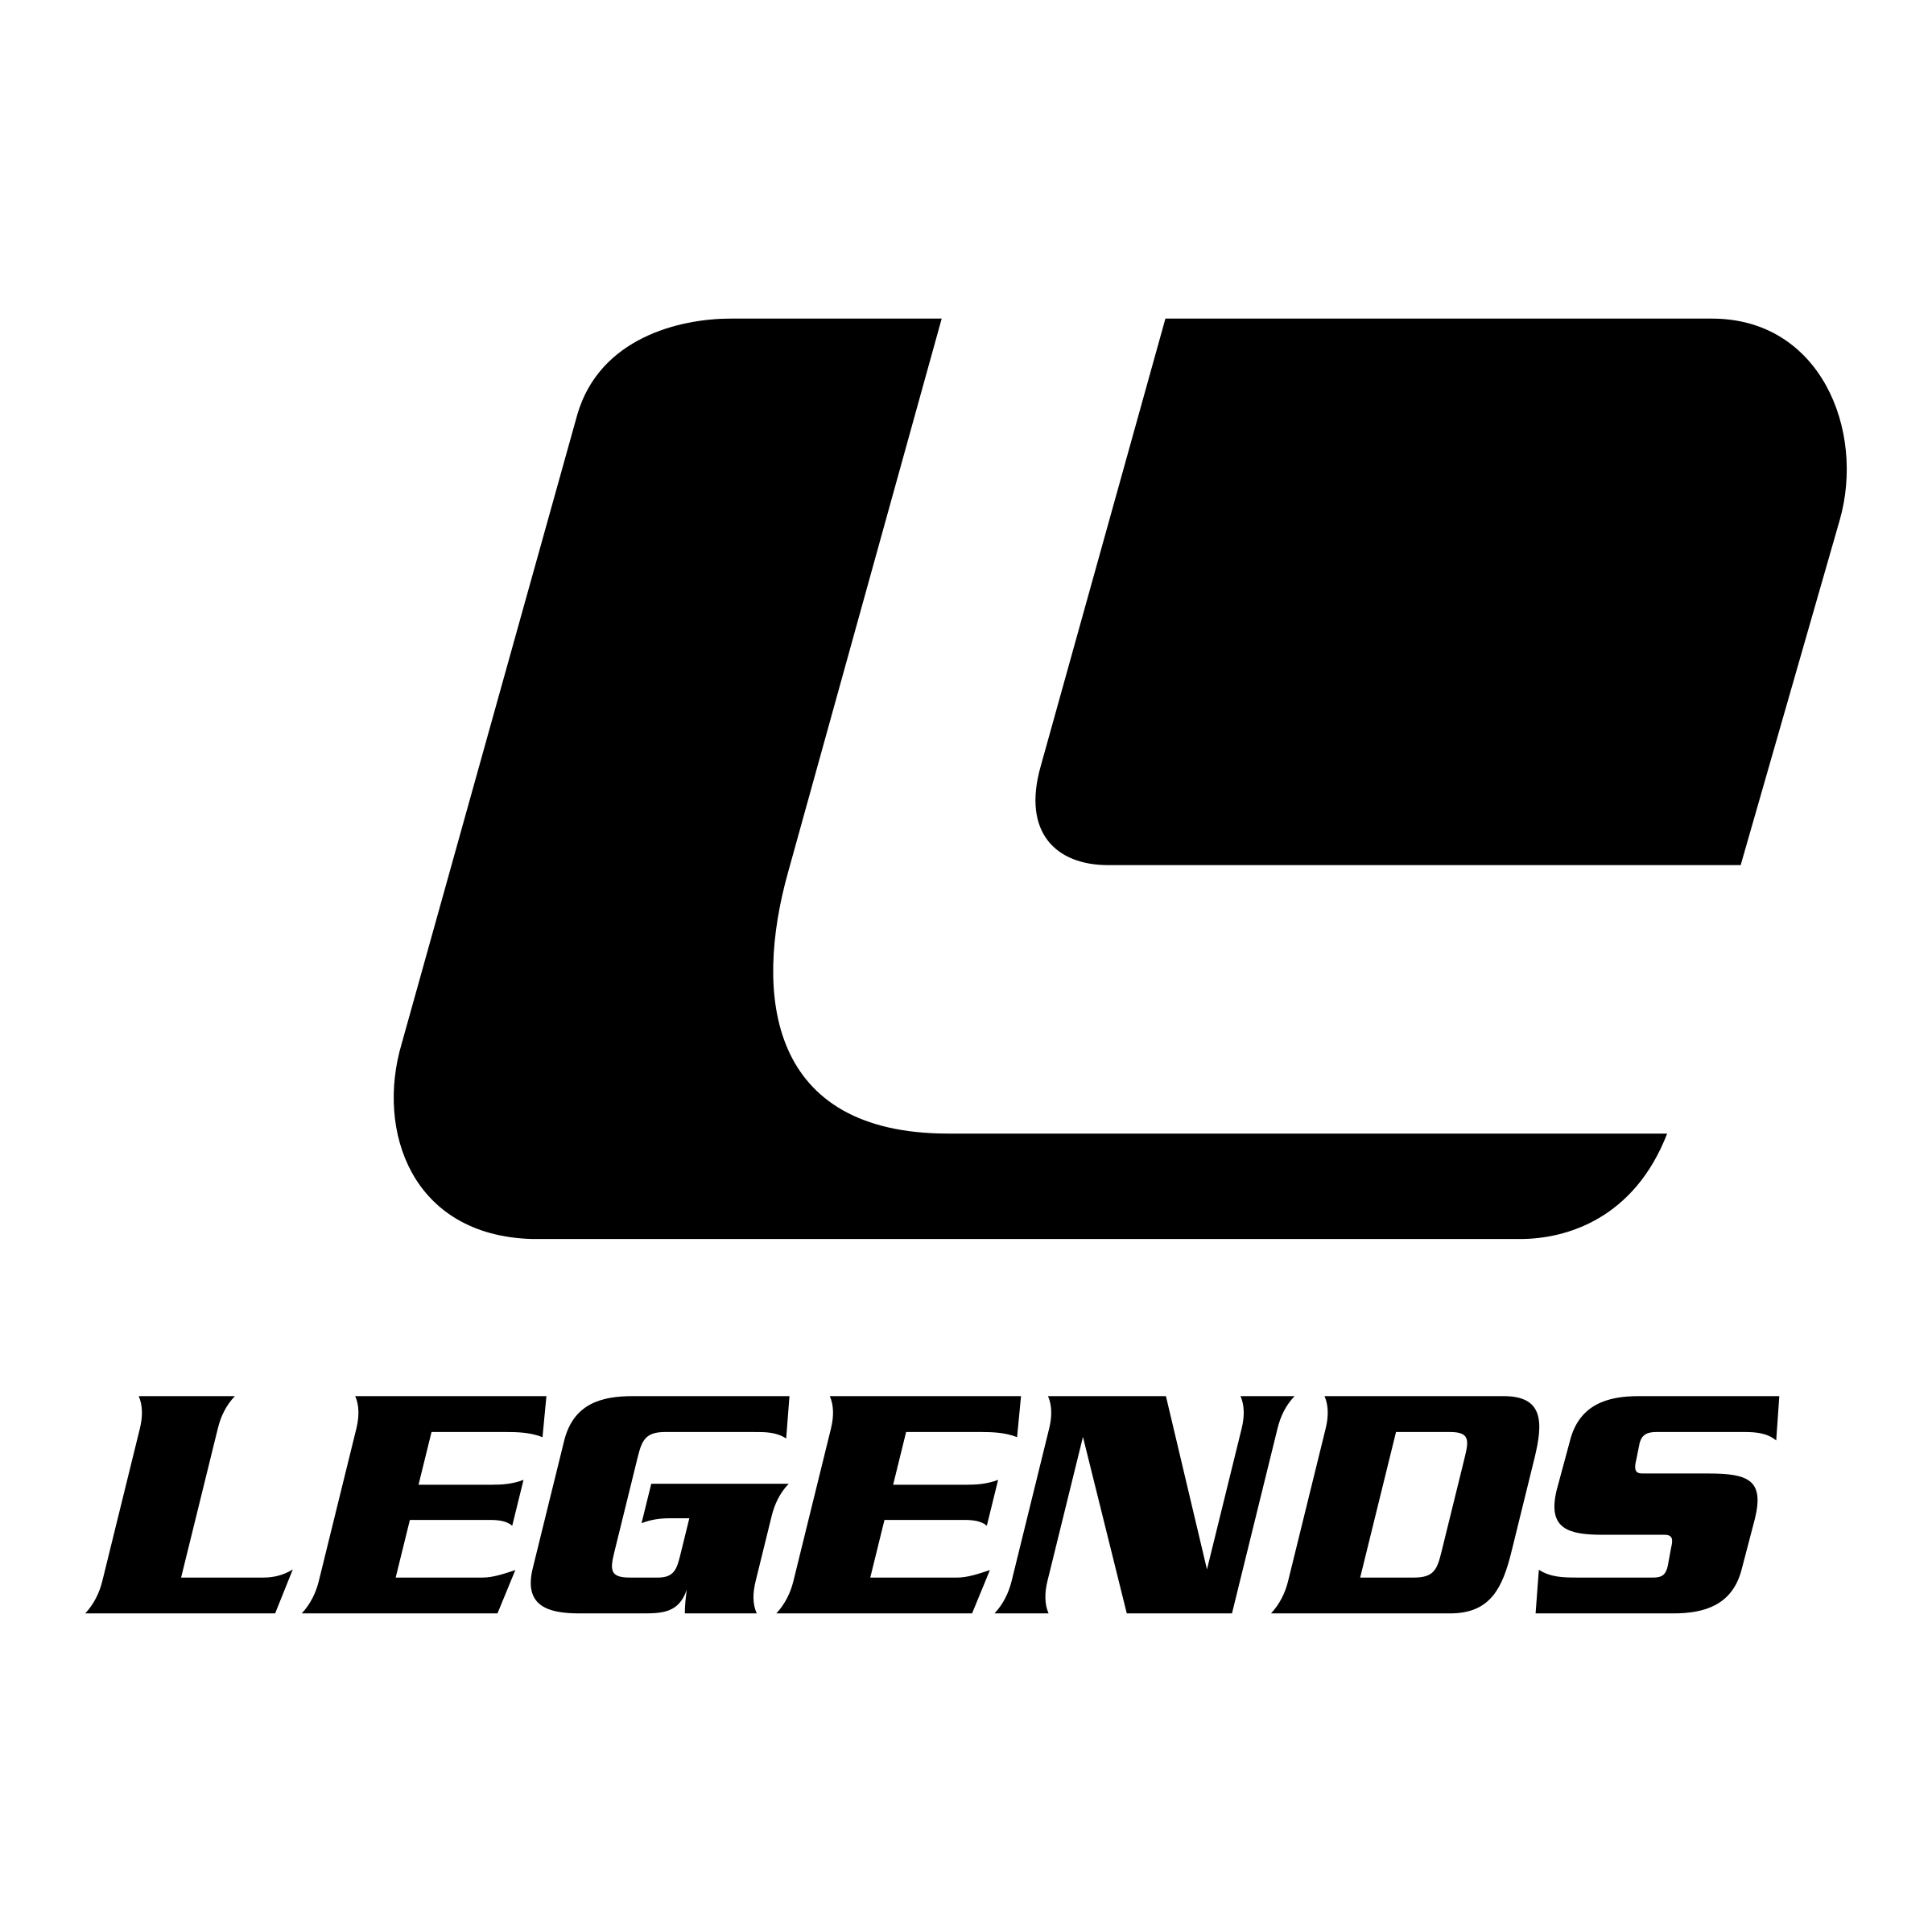 Legends Logo - Legends Logo PNG Transparent & SVG Vector - Freebie Supply